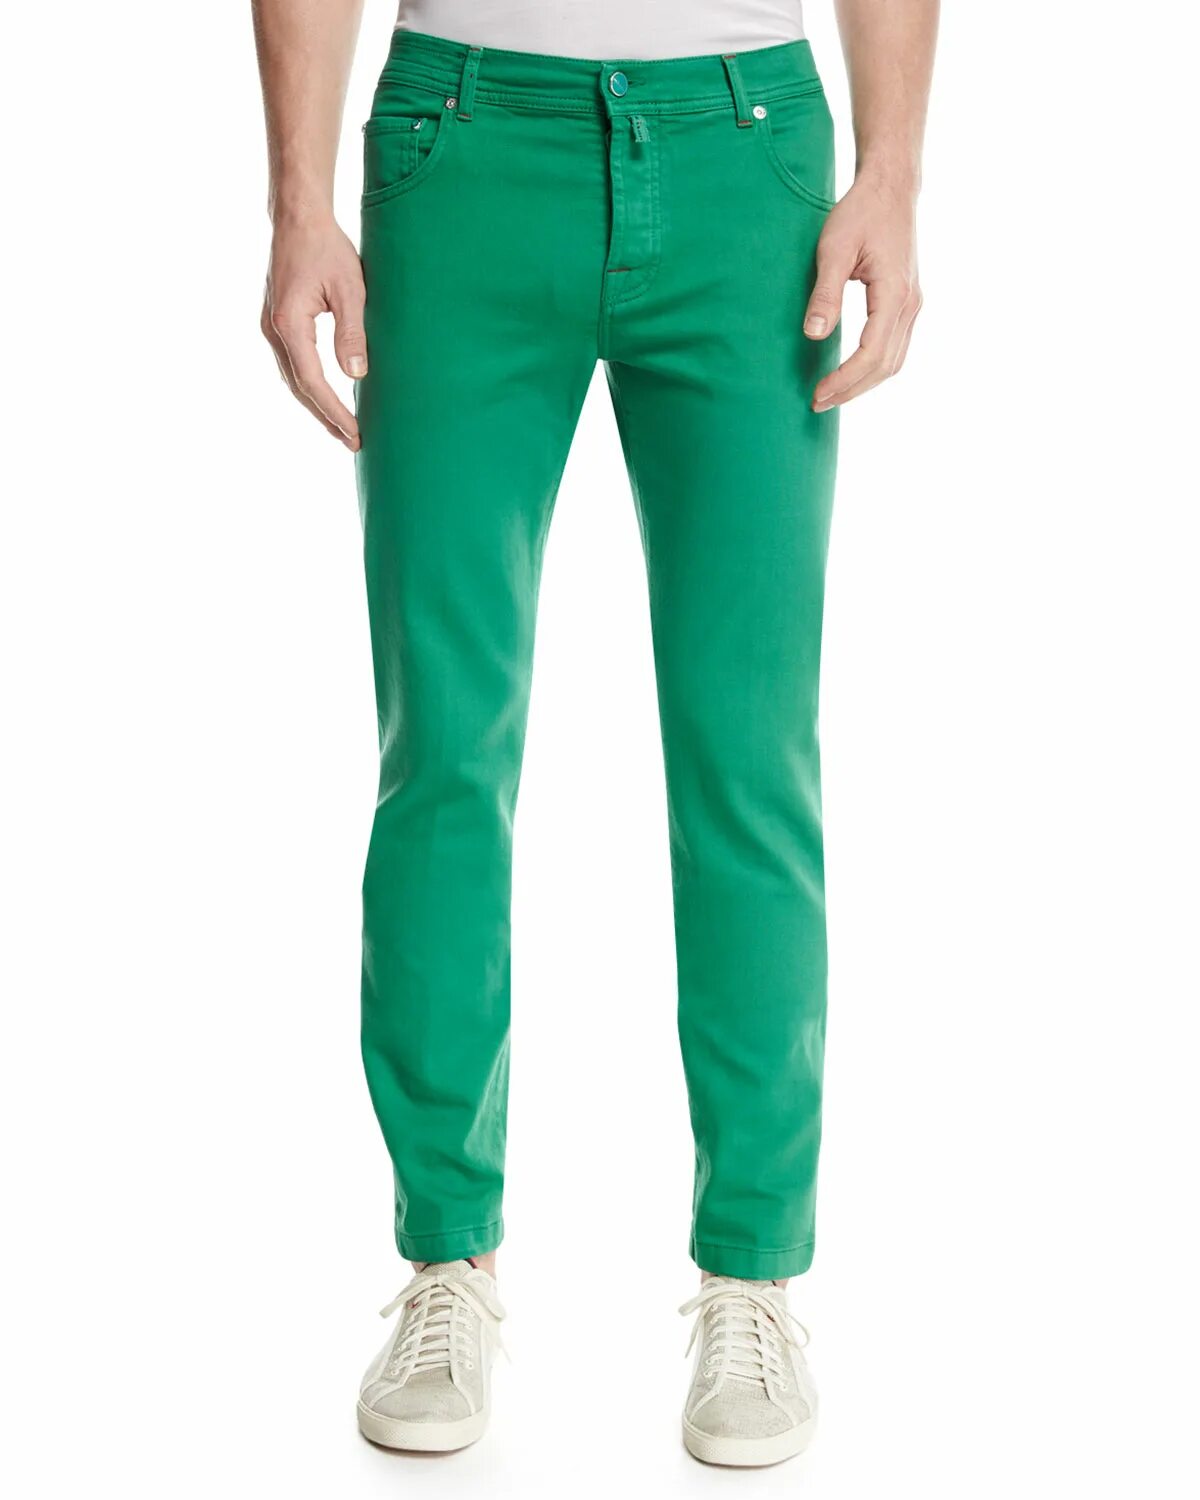 Джинса зеленая купить. Зеленые джинсы мужские. Салатовые джинсы. Мужские джинсы с зеленым оттенком. Джинсы с зеленоватым оттенком мужские.